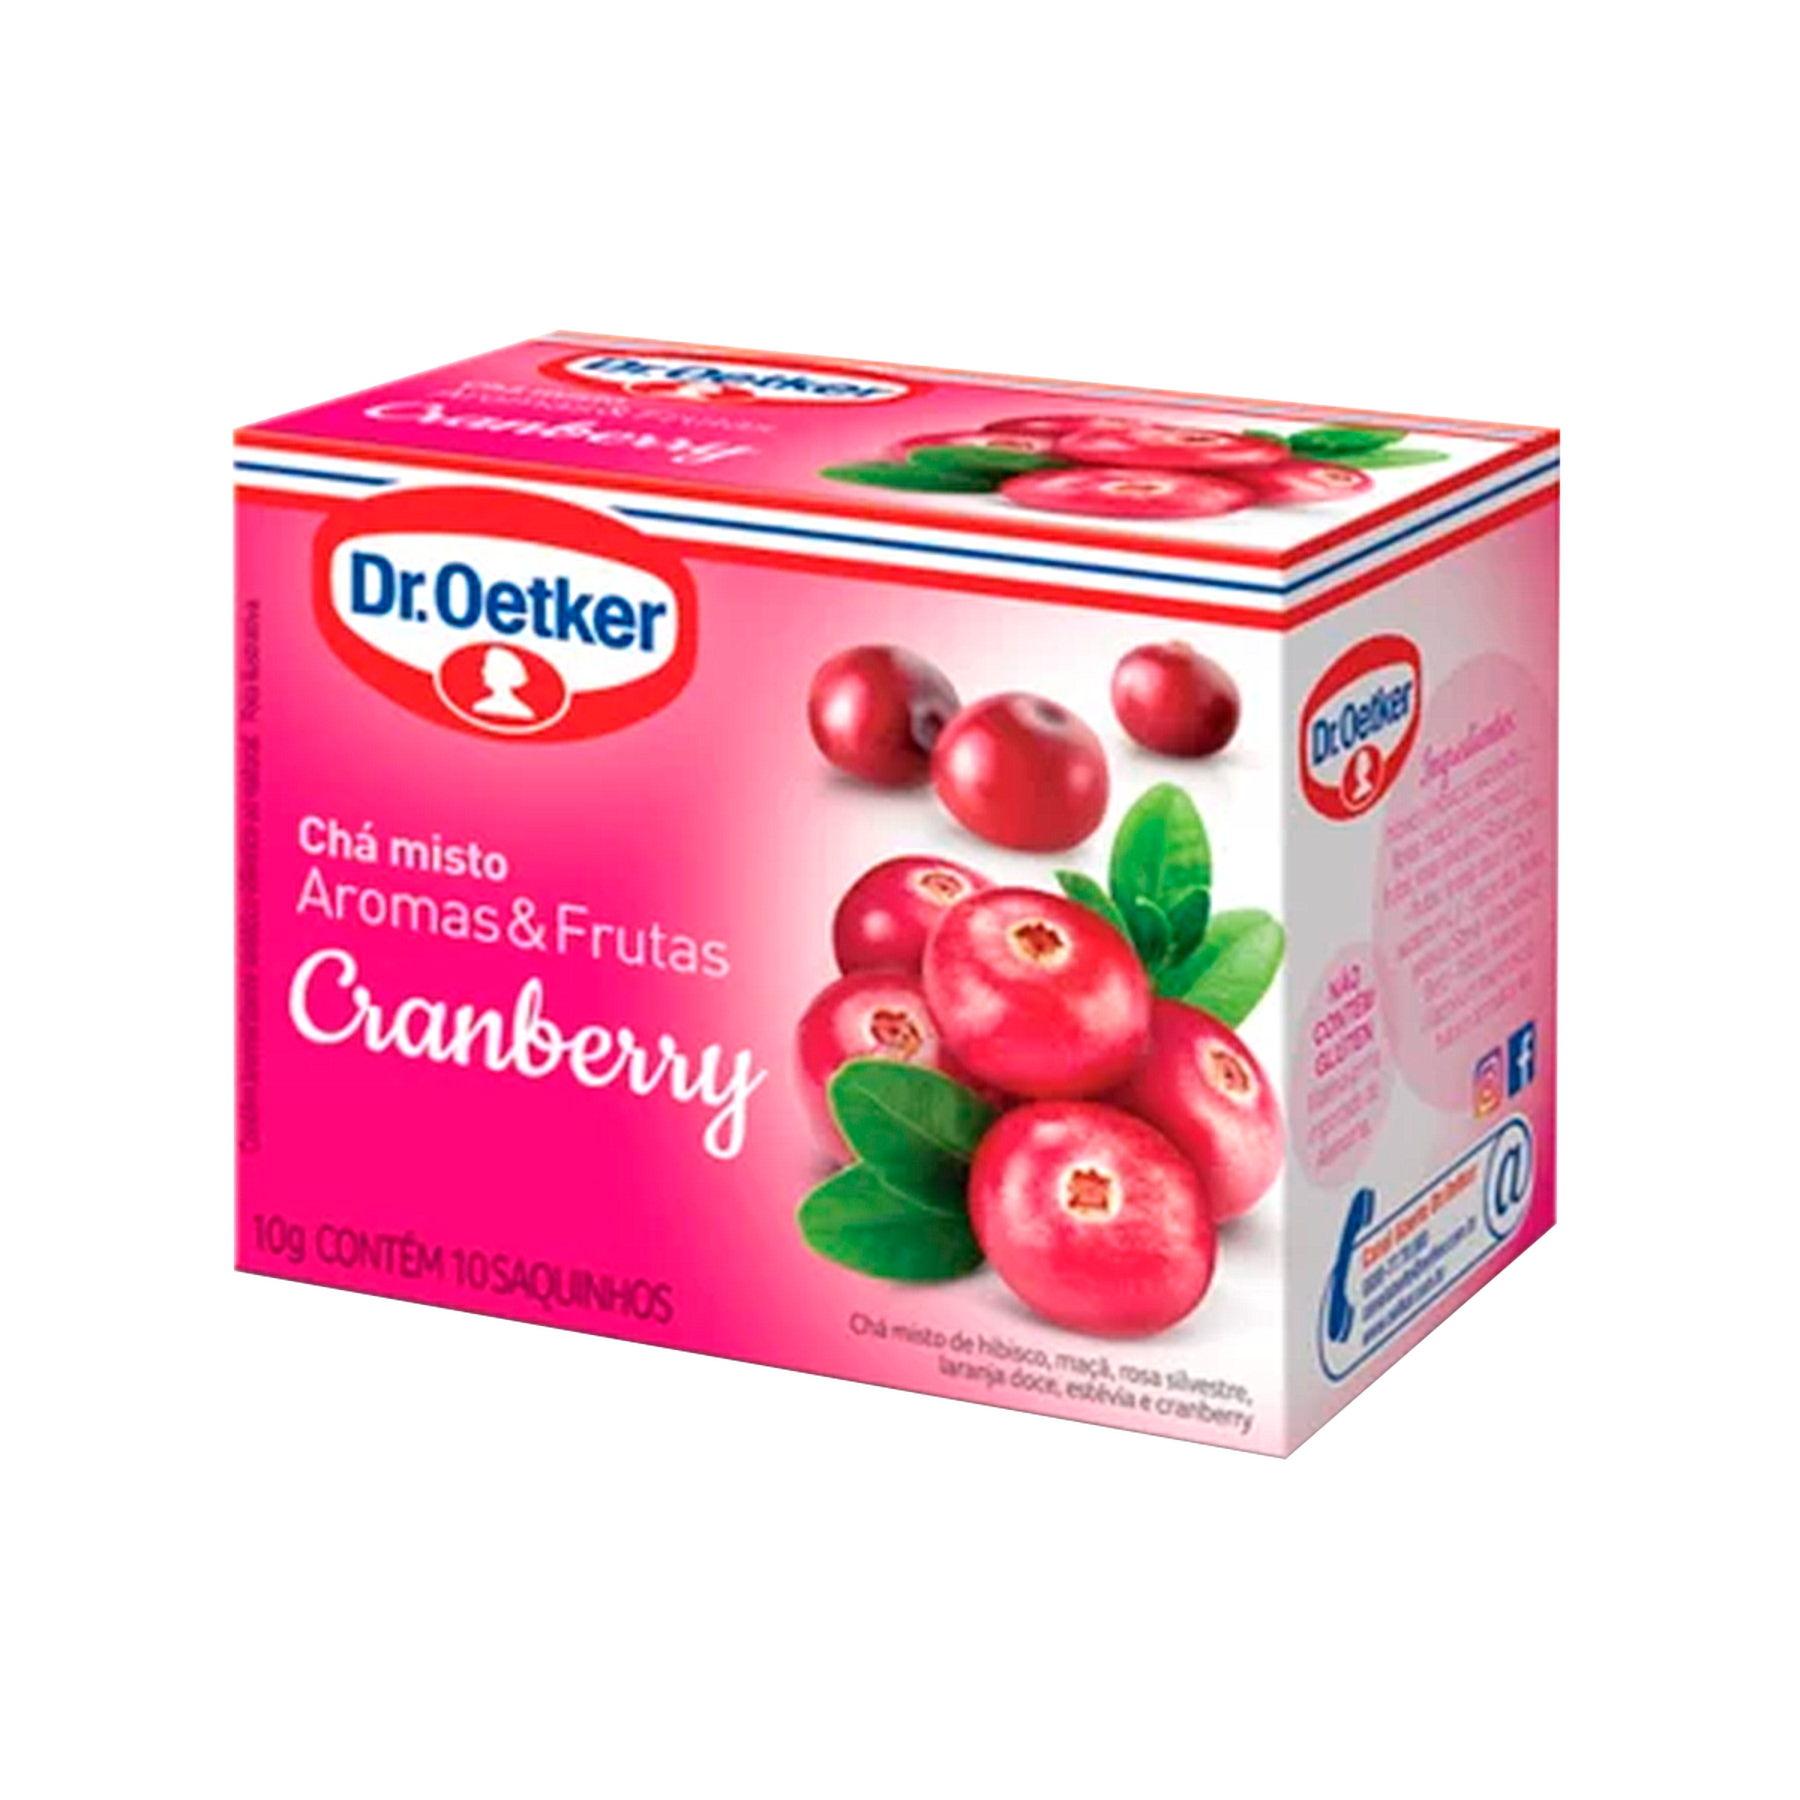 Chá Misto Aromas e Frutas Cranberry Dr. Oetker 10g C/10 Unidades